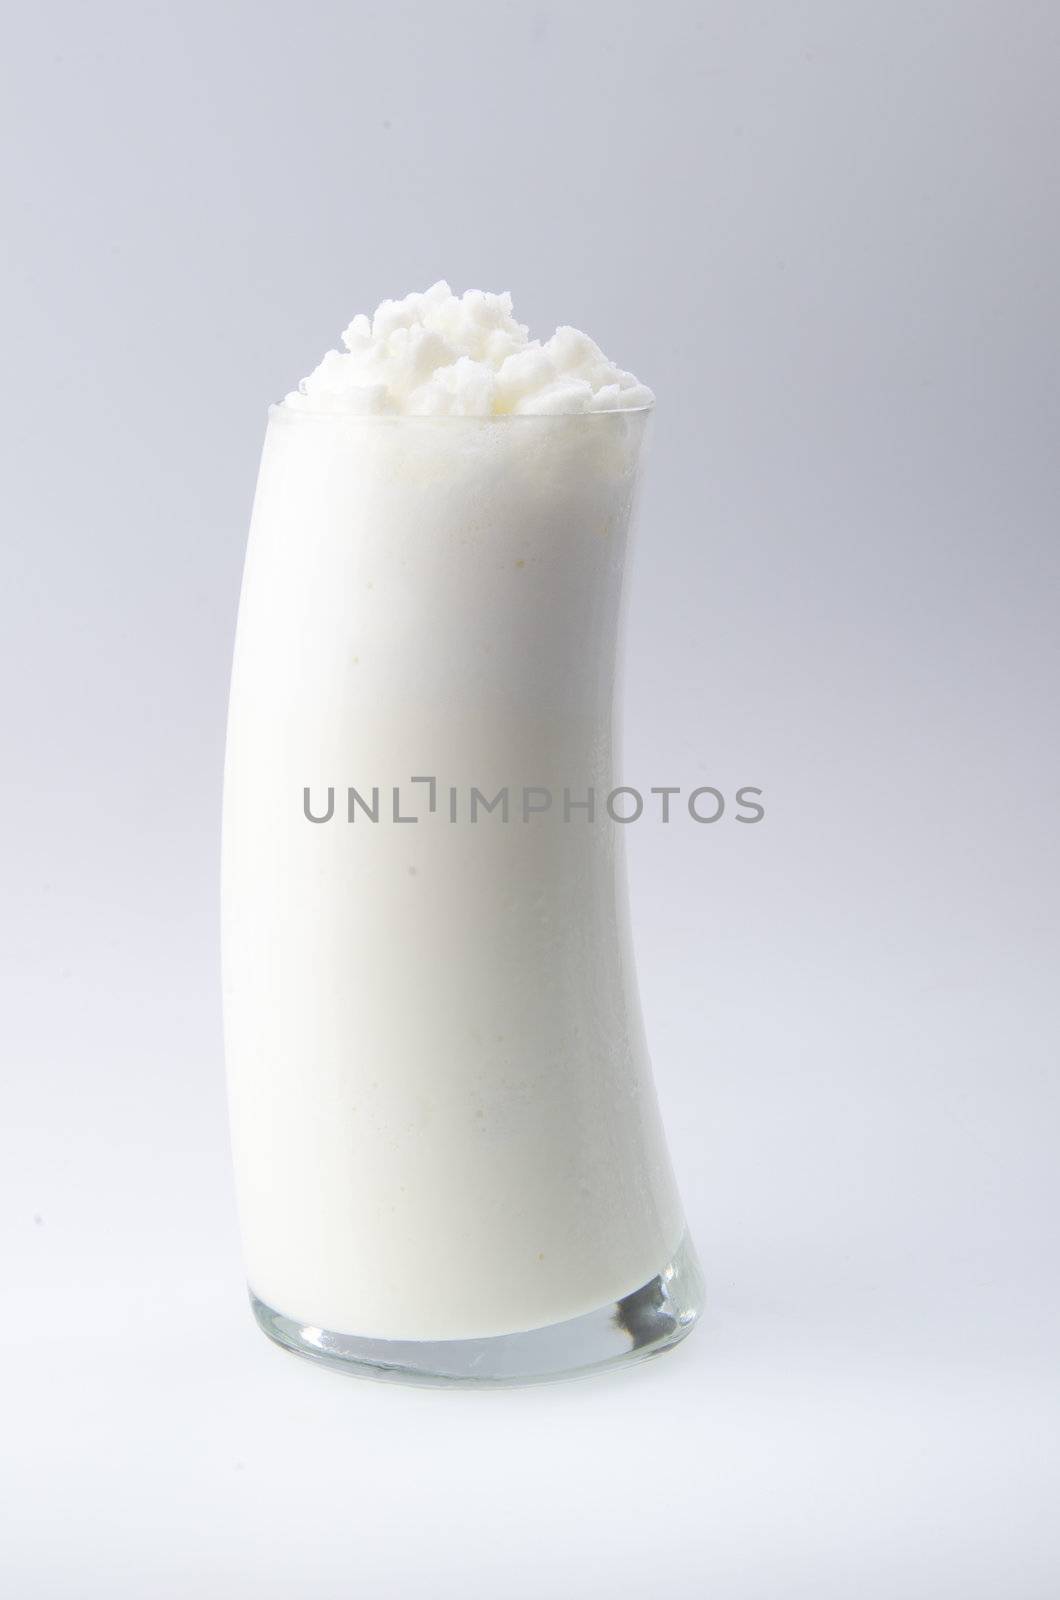 yogurt isolated over white background